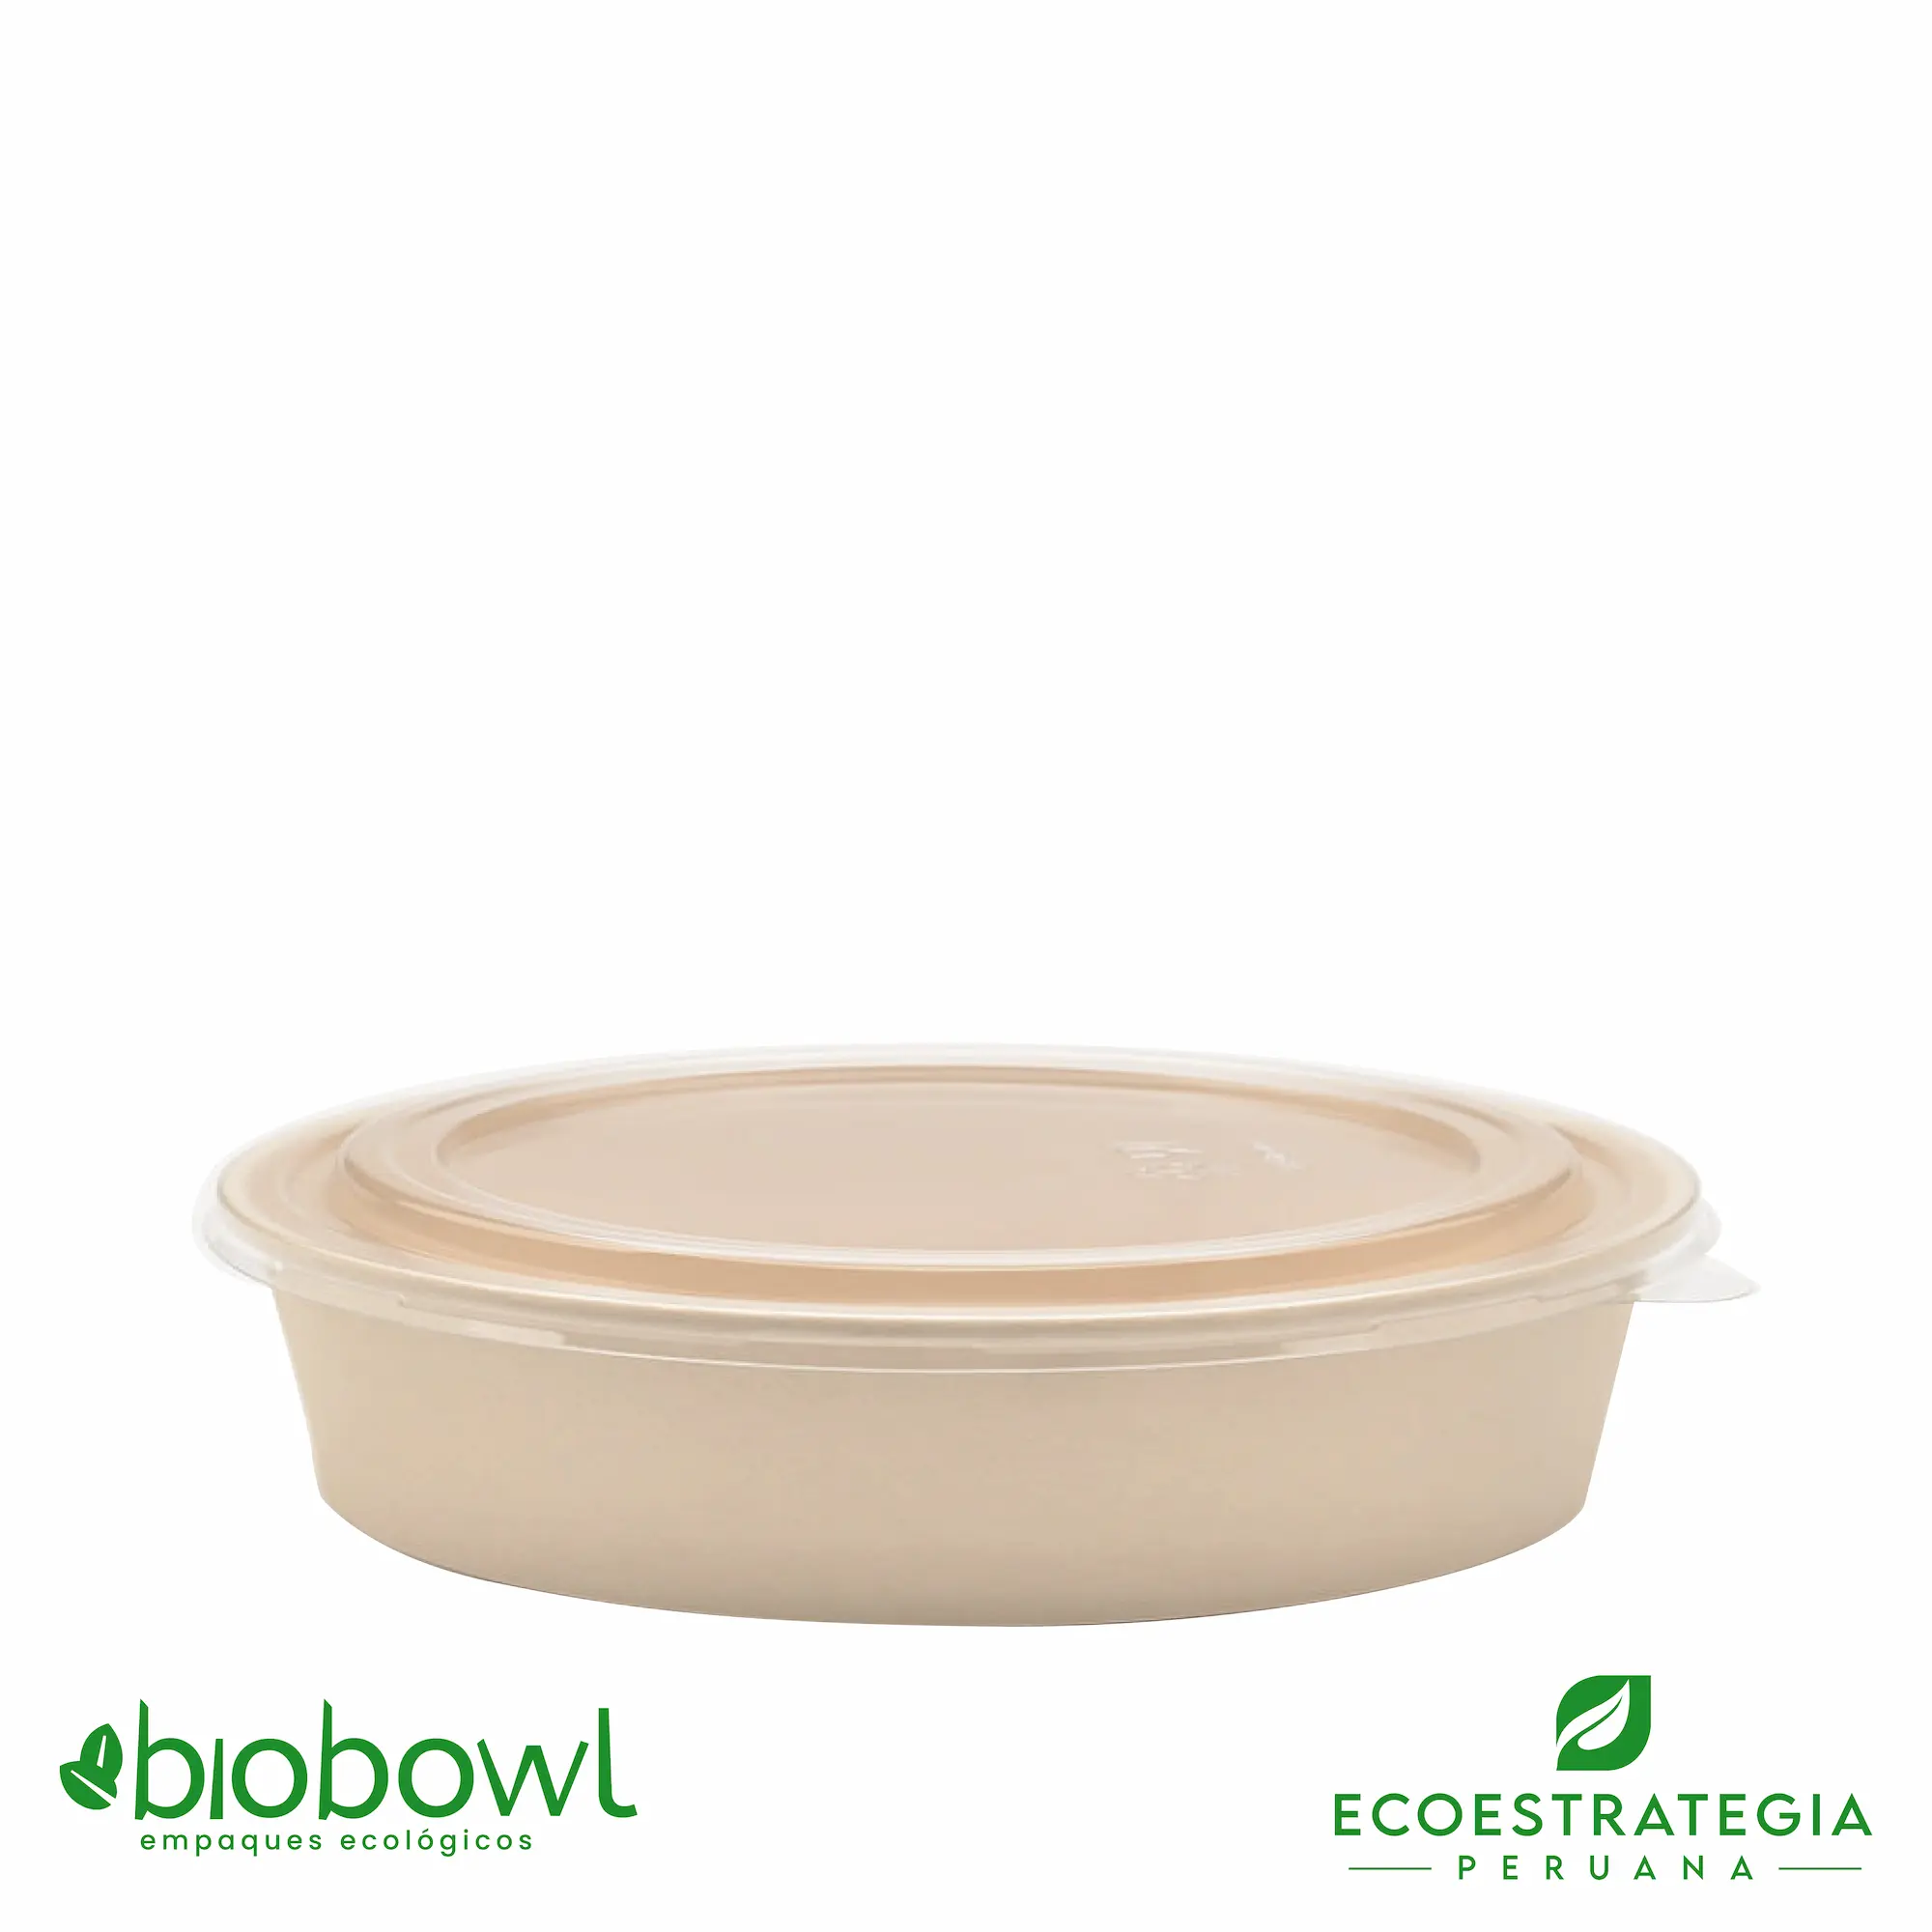 El bowl bambú biodegradable de 500ml o EP-500, es también conocido como bowl bamboo 500ml o bambú sopero 500ml, bambú salad 500ml, bowl para ensalada con tapa pet 500ml o sopero con fibra de bambú 500ml, bowl bambú ecologico, bowl bambú reciclable, bowl descartable, bowl bambu postres 500ml, bowl bambu helados 500ml